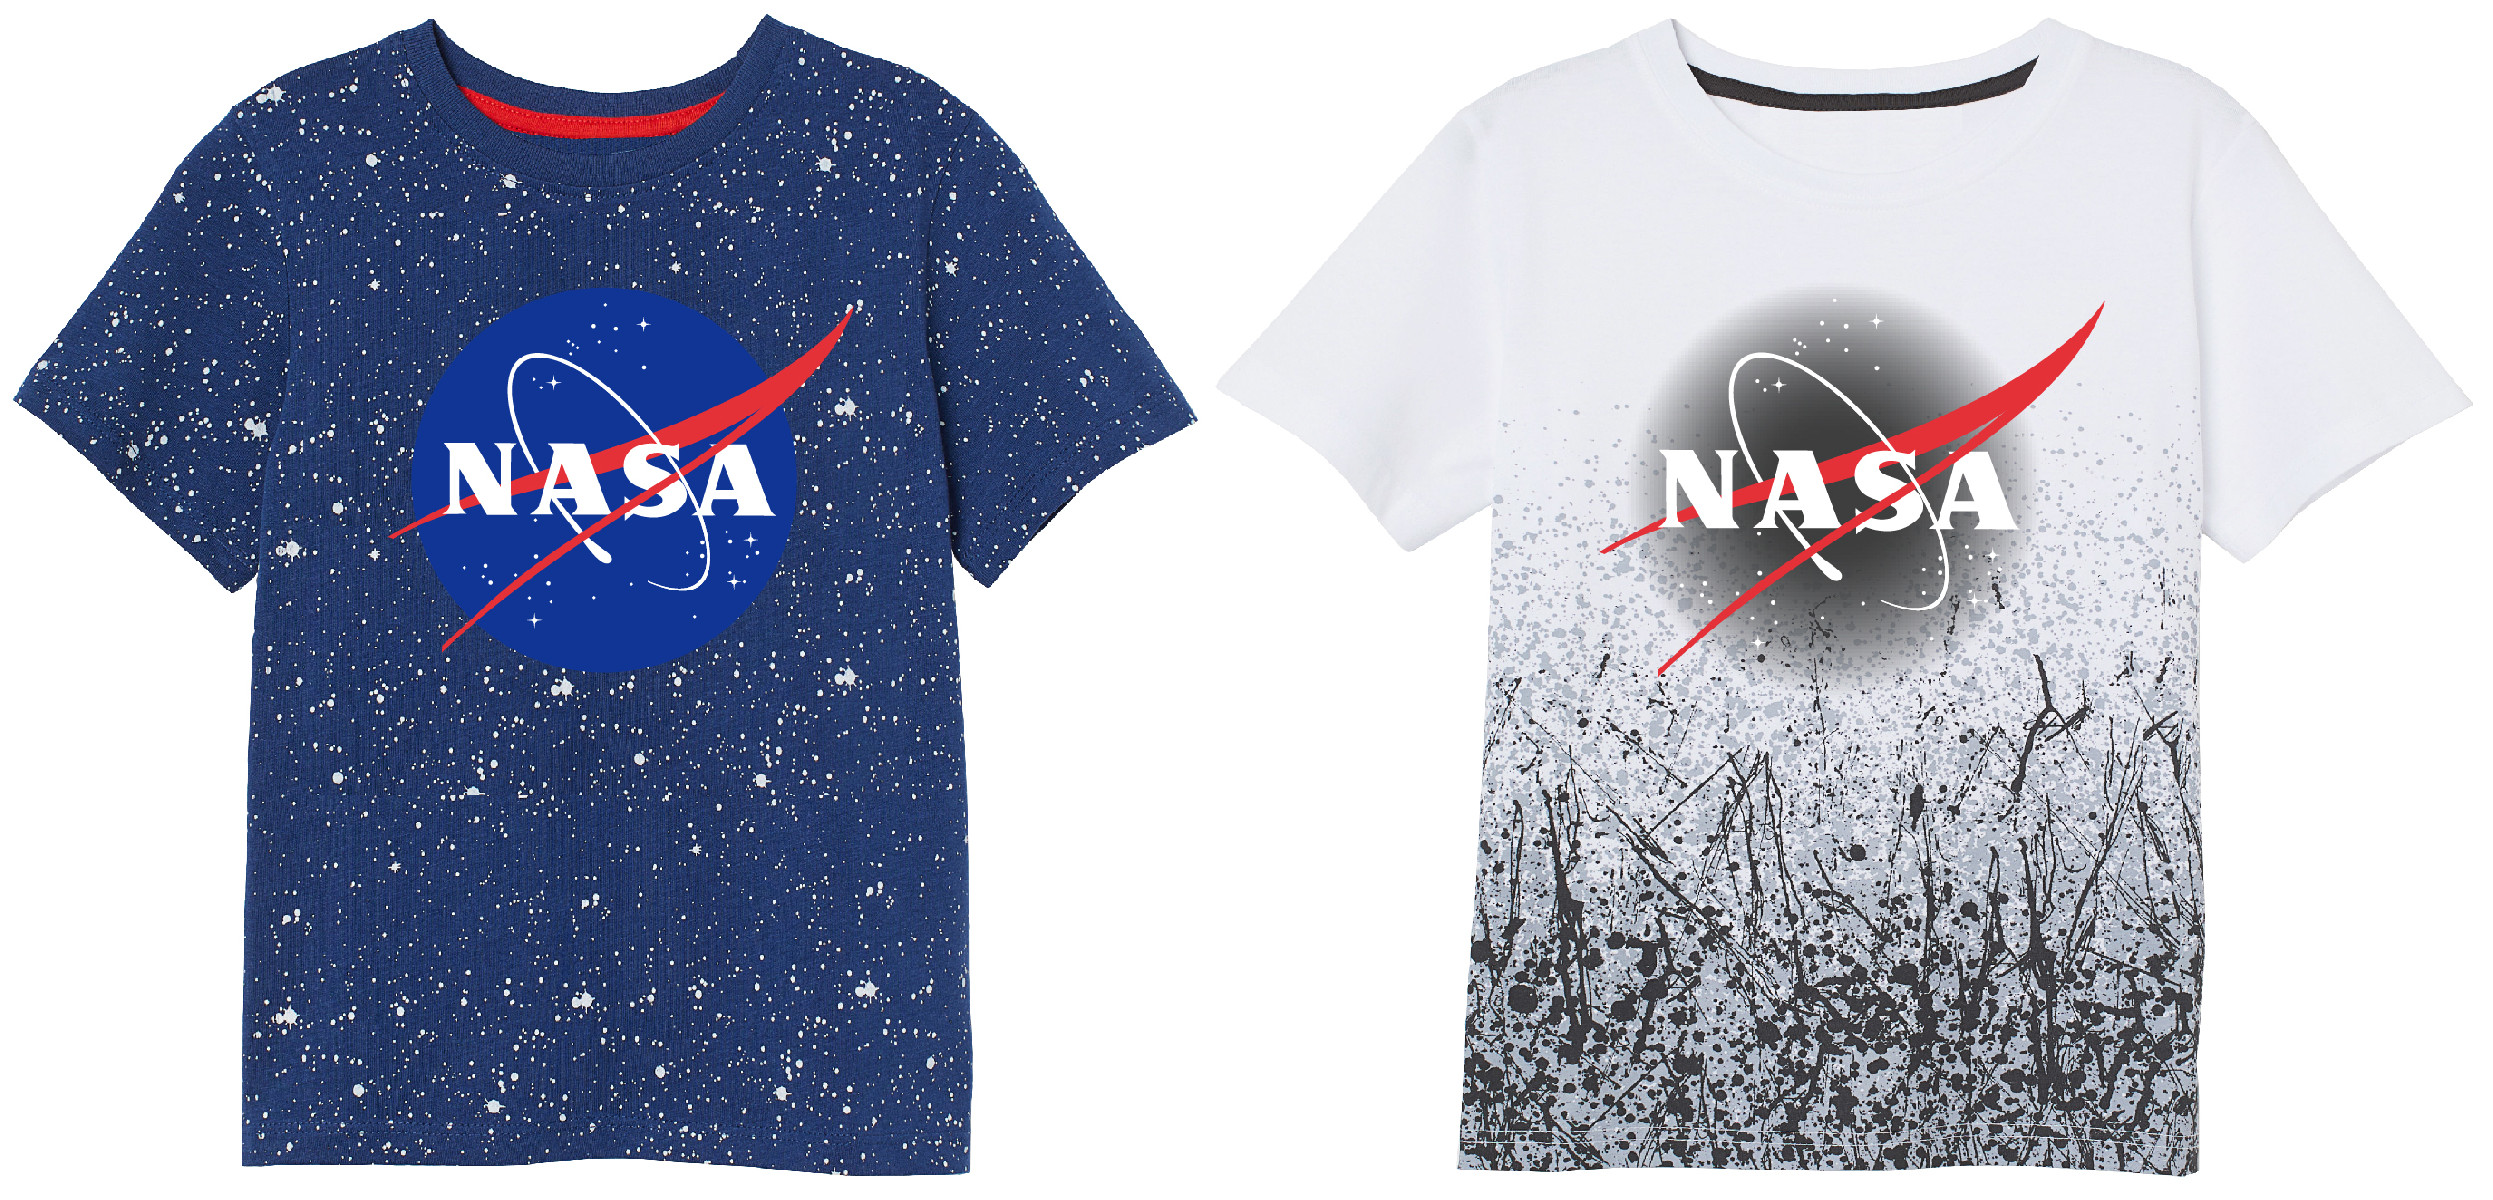 Nasa - licence Chlapecké tričko - NASA 5202172/167, bílá Barva: Bílá, Velikost: 134-140